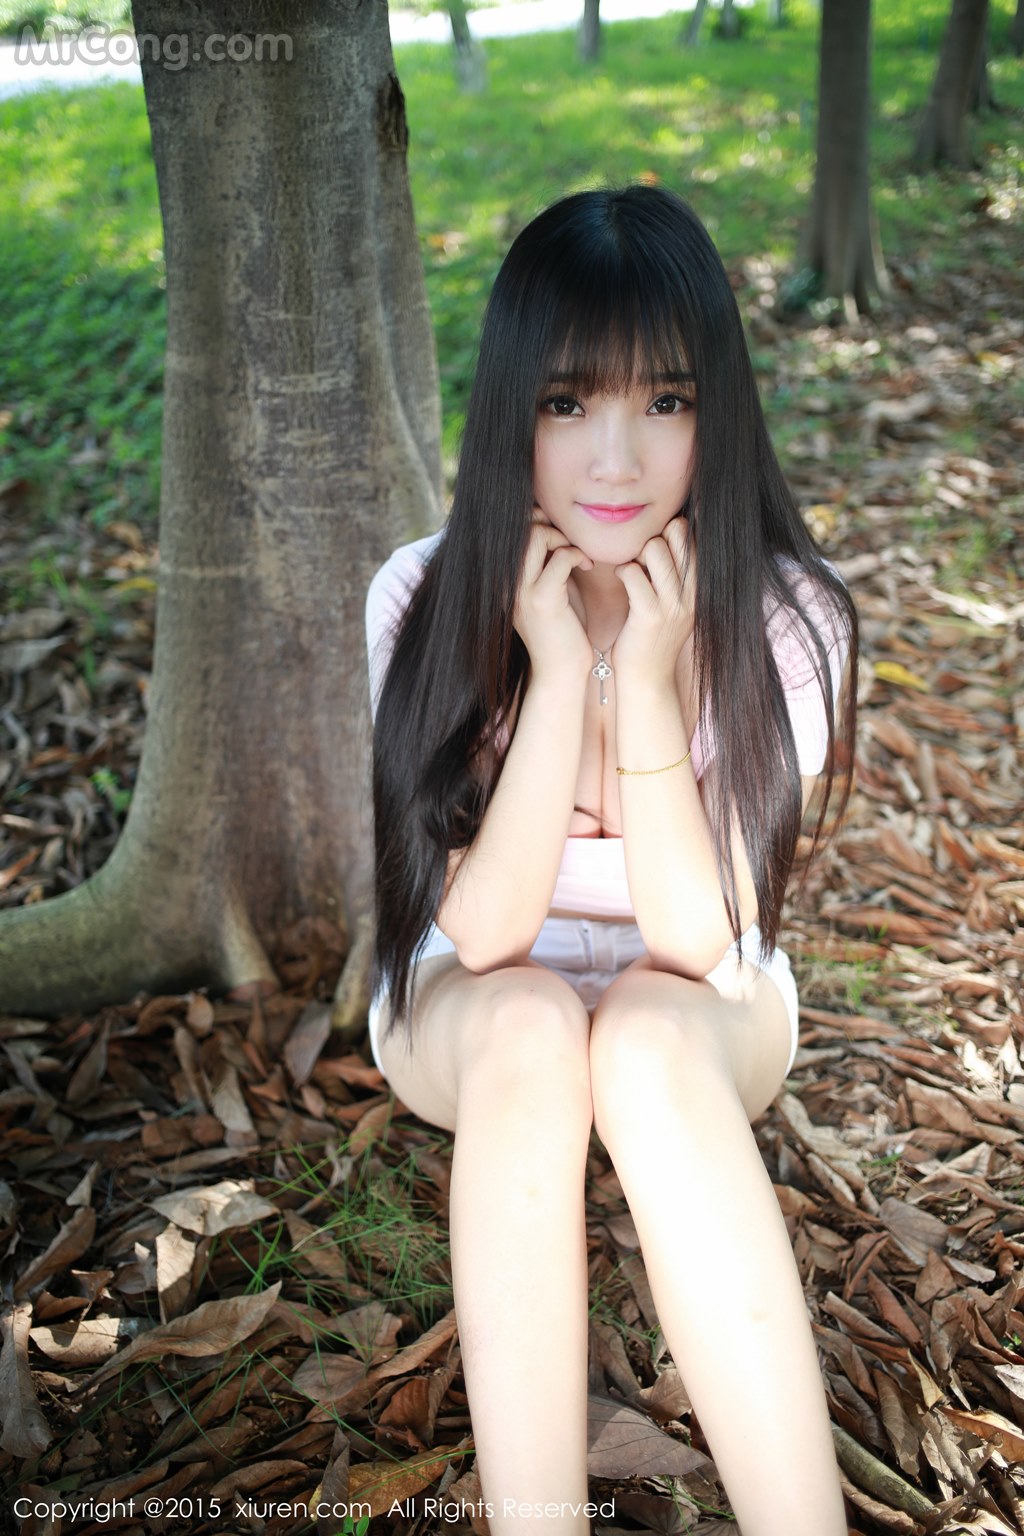 XIUREN No.345: Model Xia Yao baby (夏 瑶 baby) (43 pictures) photo 1-3